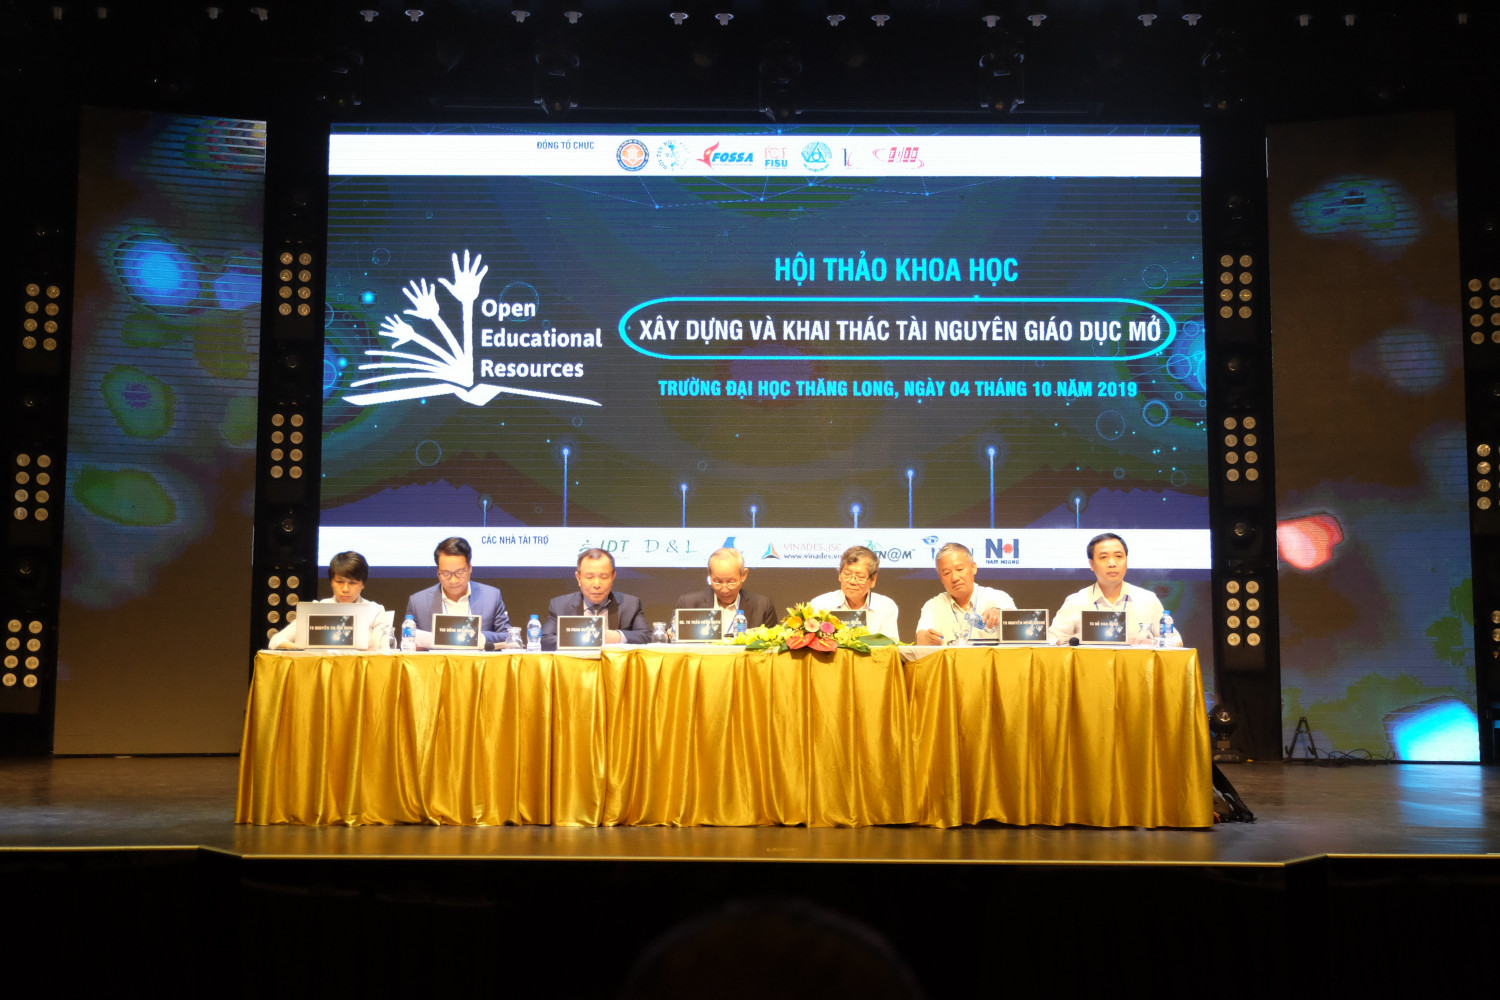 Hội thảo 'Xây dựng và khai thác tài nguyên giáo dục mở' được tổ chức tại trường Đại học Thăng Long